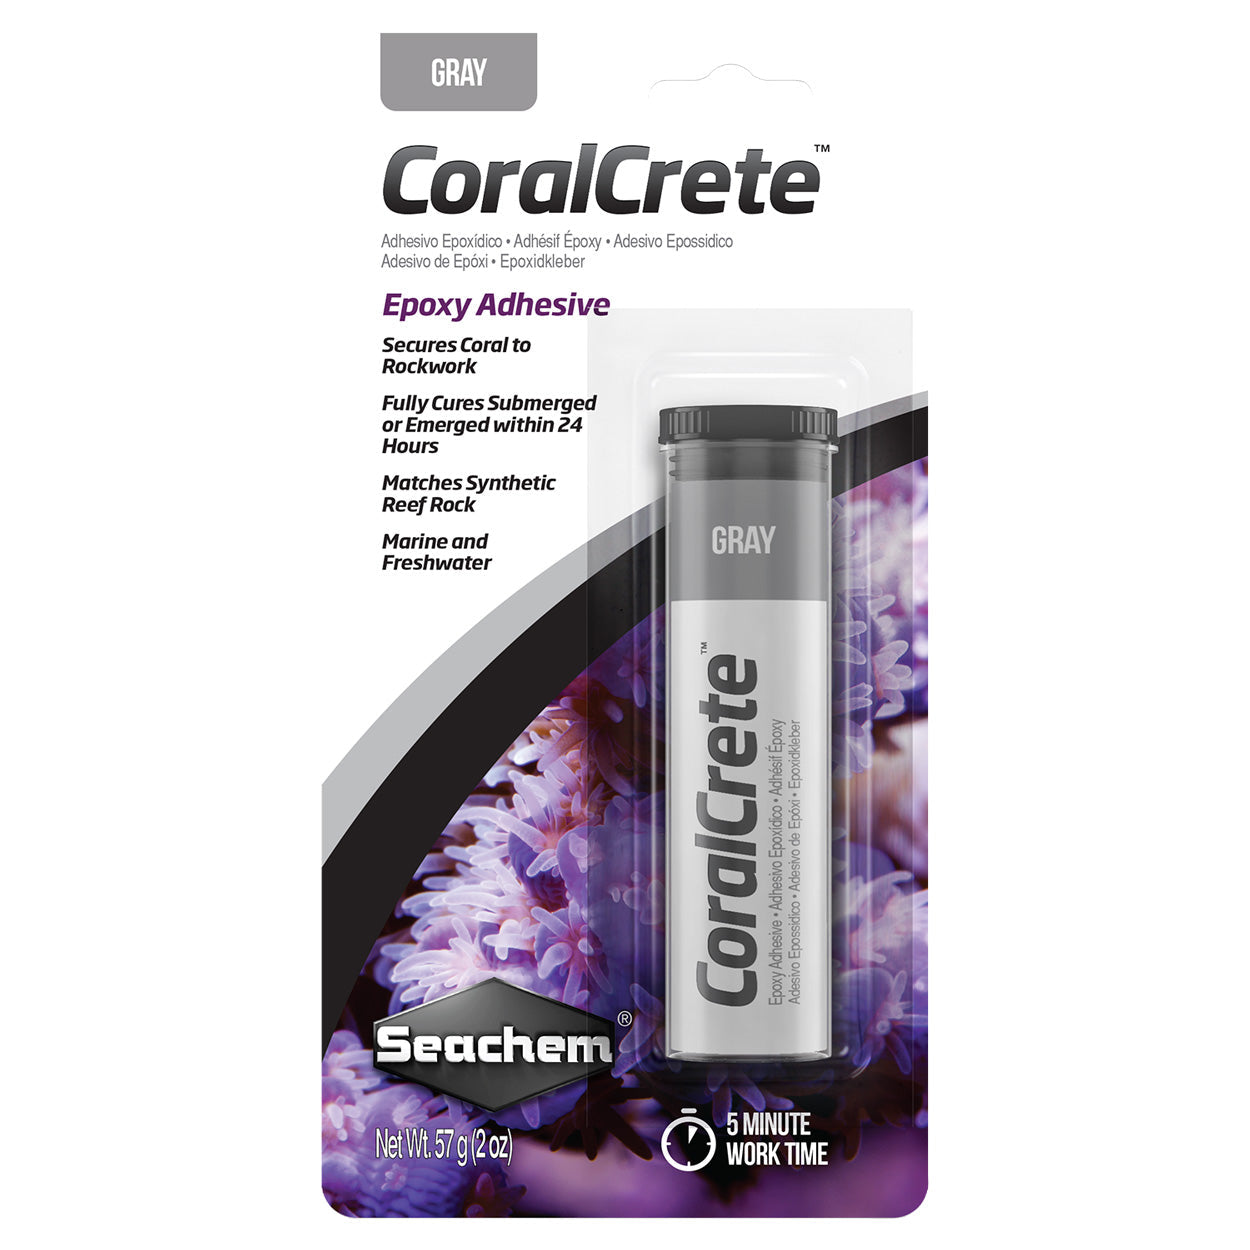 Seachem CoralCrete - Purple